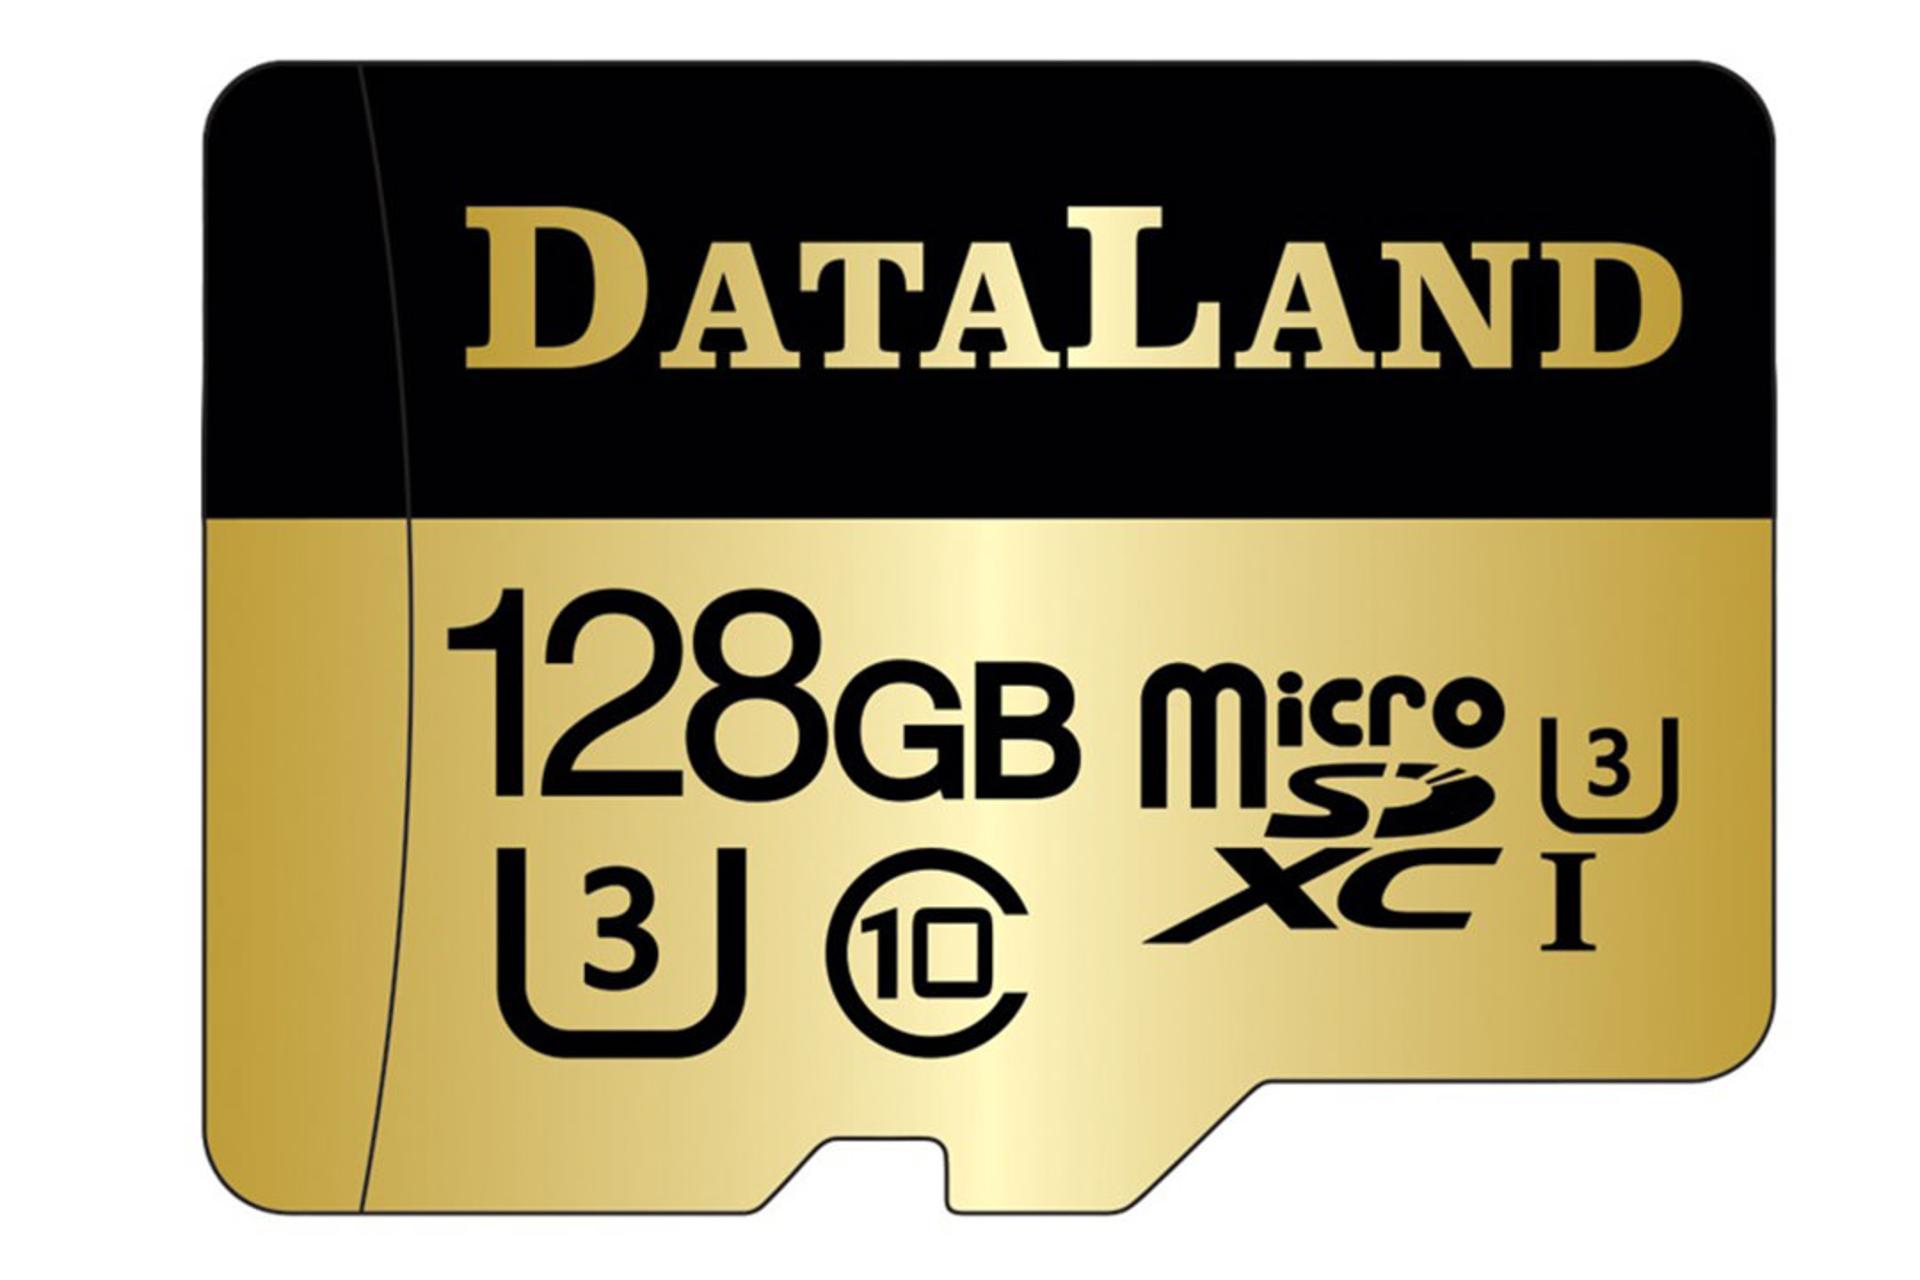 DataLand 600x microSDXC Class 10 UHS-I U3 128GB